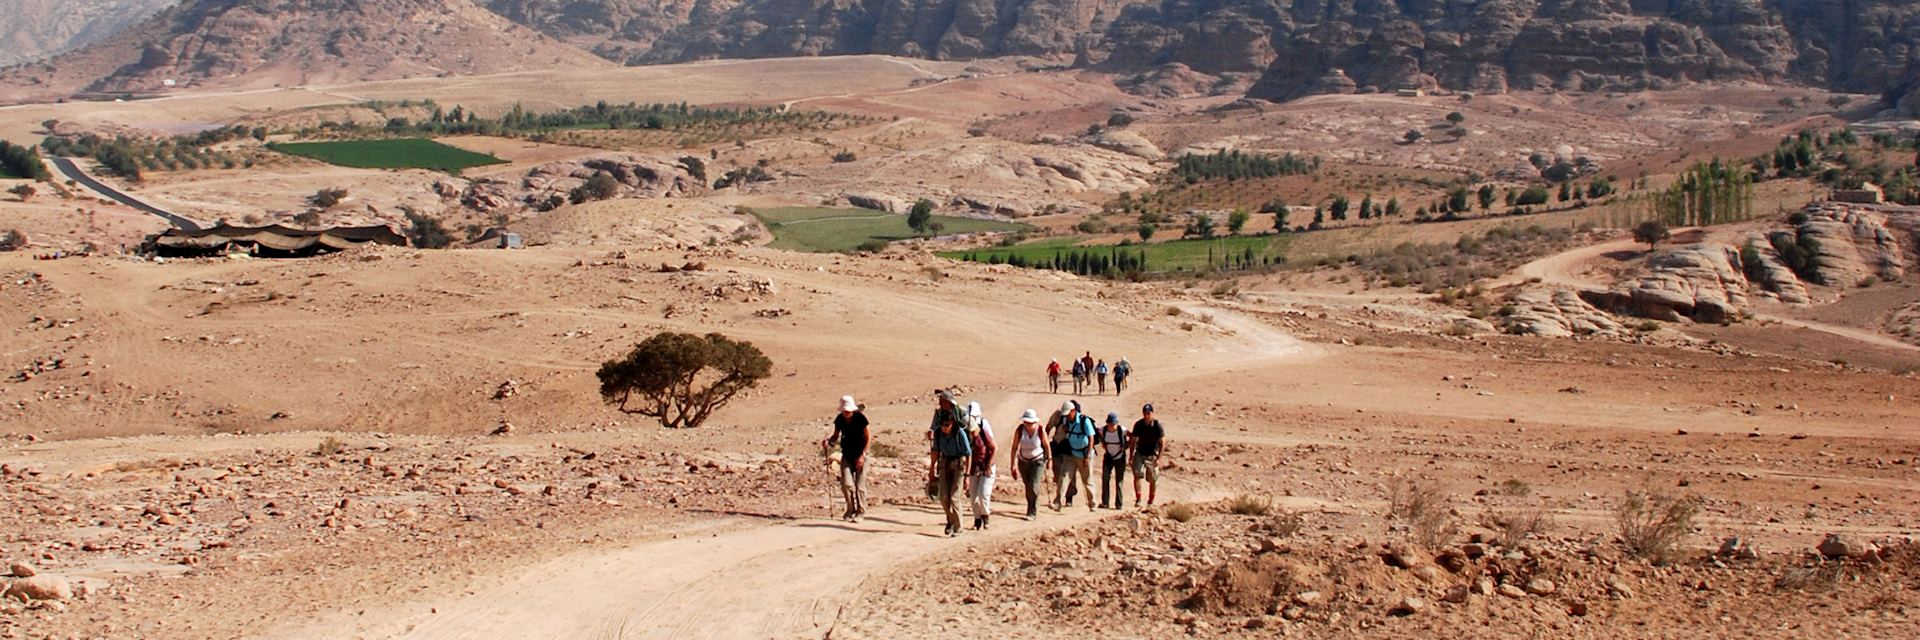 Walking toward Petra, Jordan